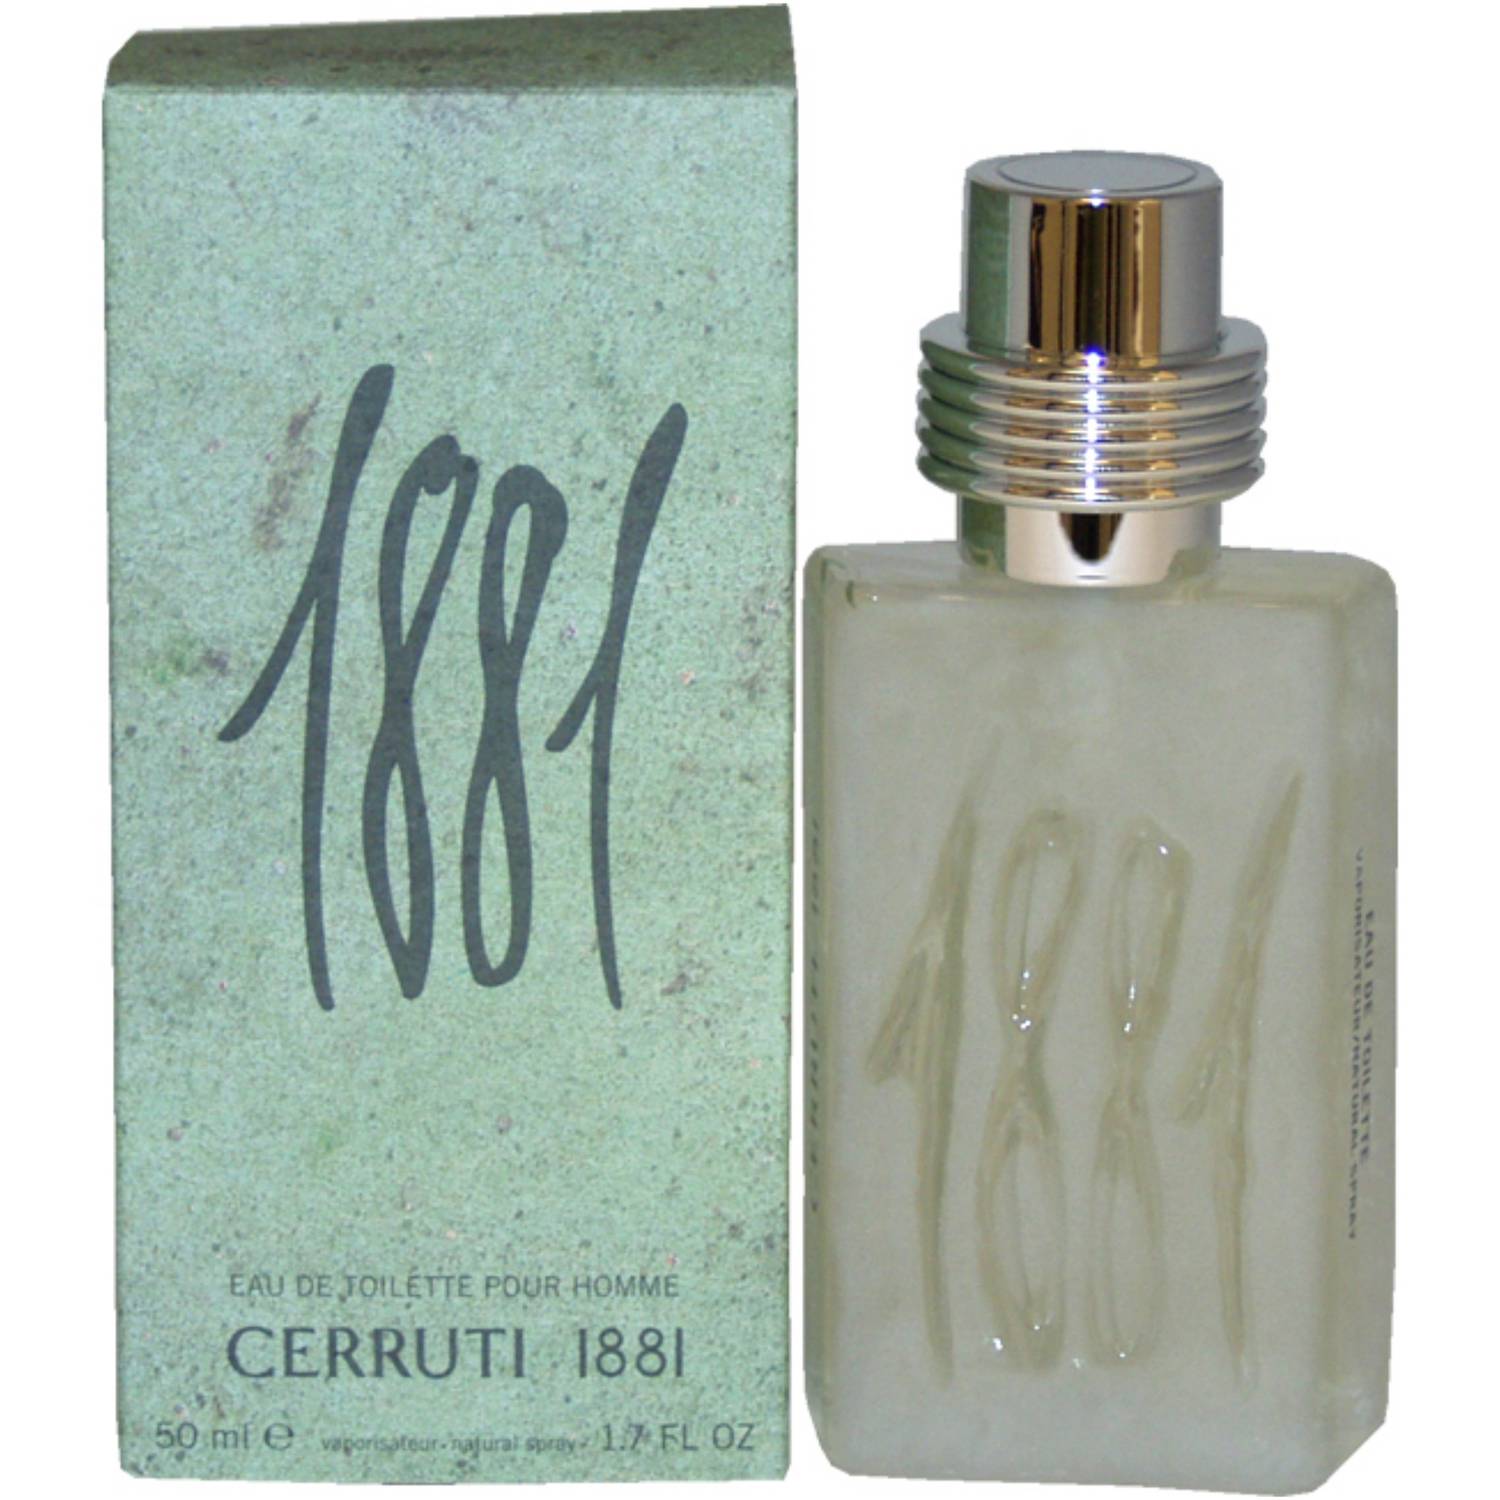 Nino Cerruti 1881 Eau de Toilette Spray for Men